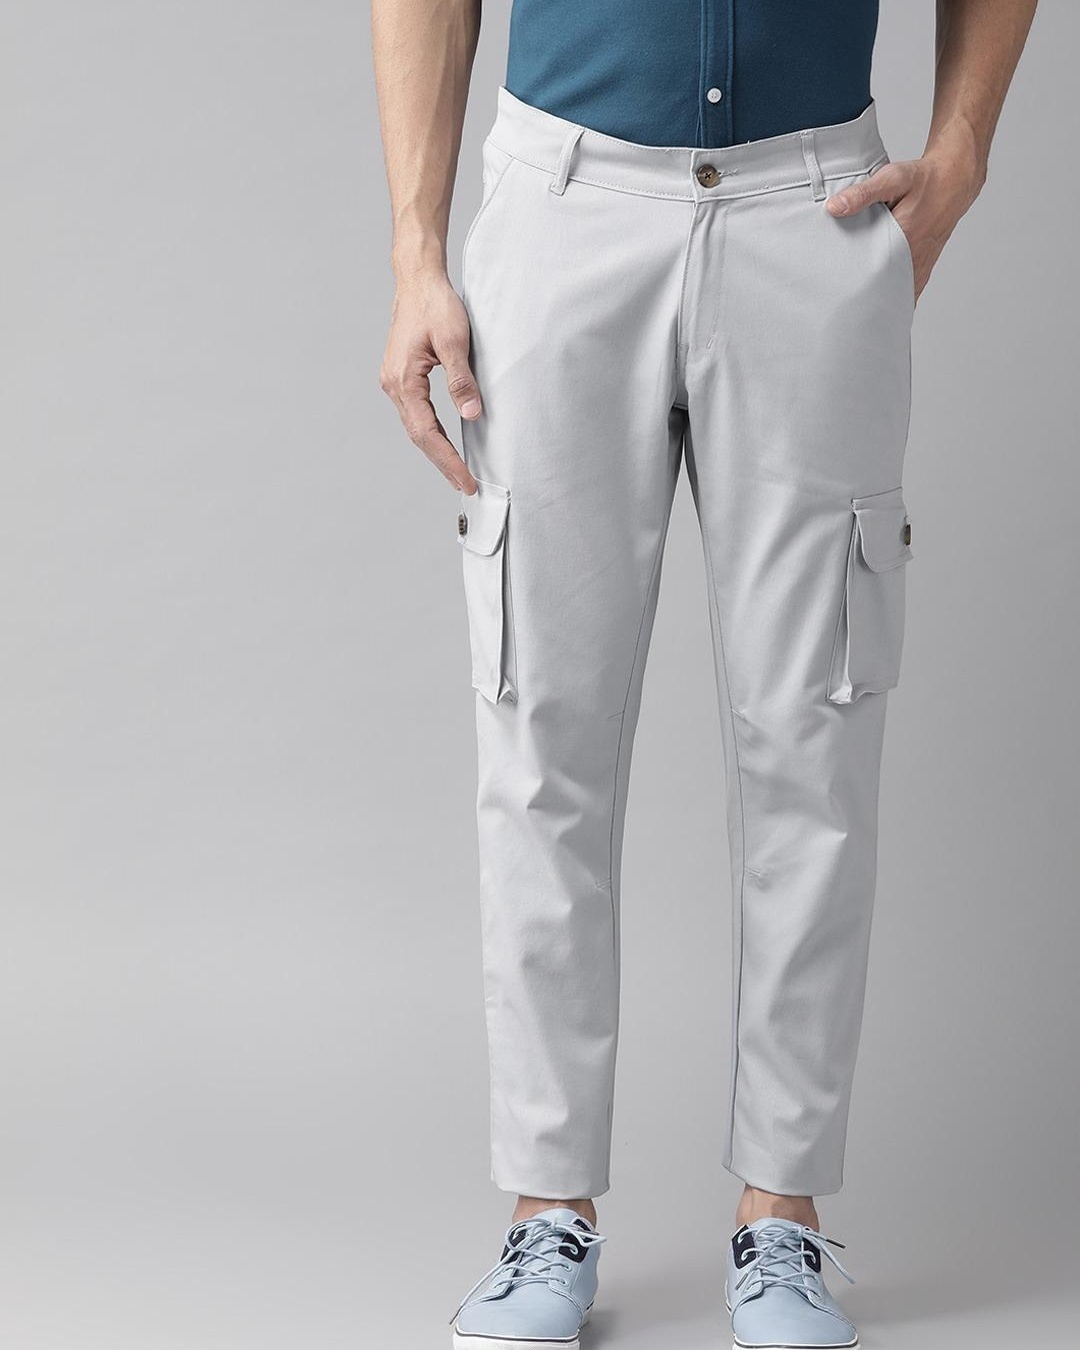 Hubberholme Men Grey Melange Solid Slim Fit Track Pants  Wholesale Price  App